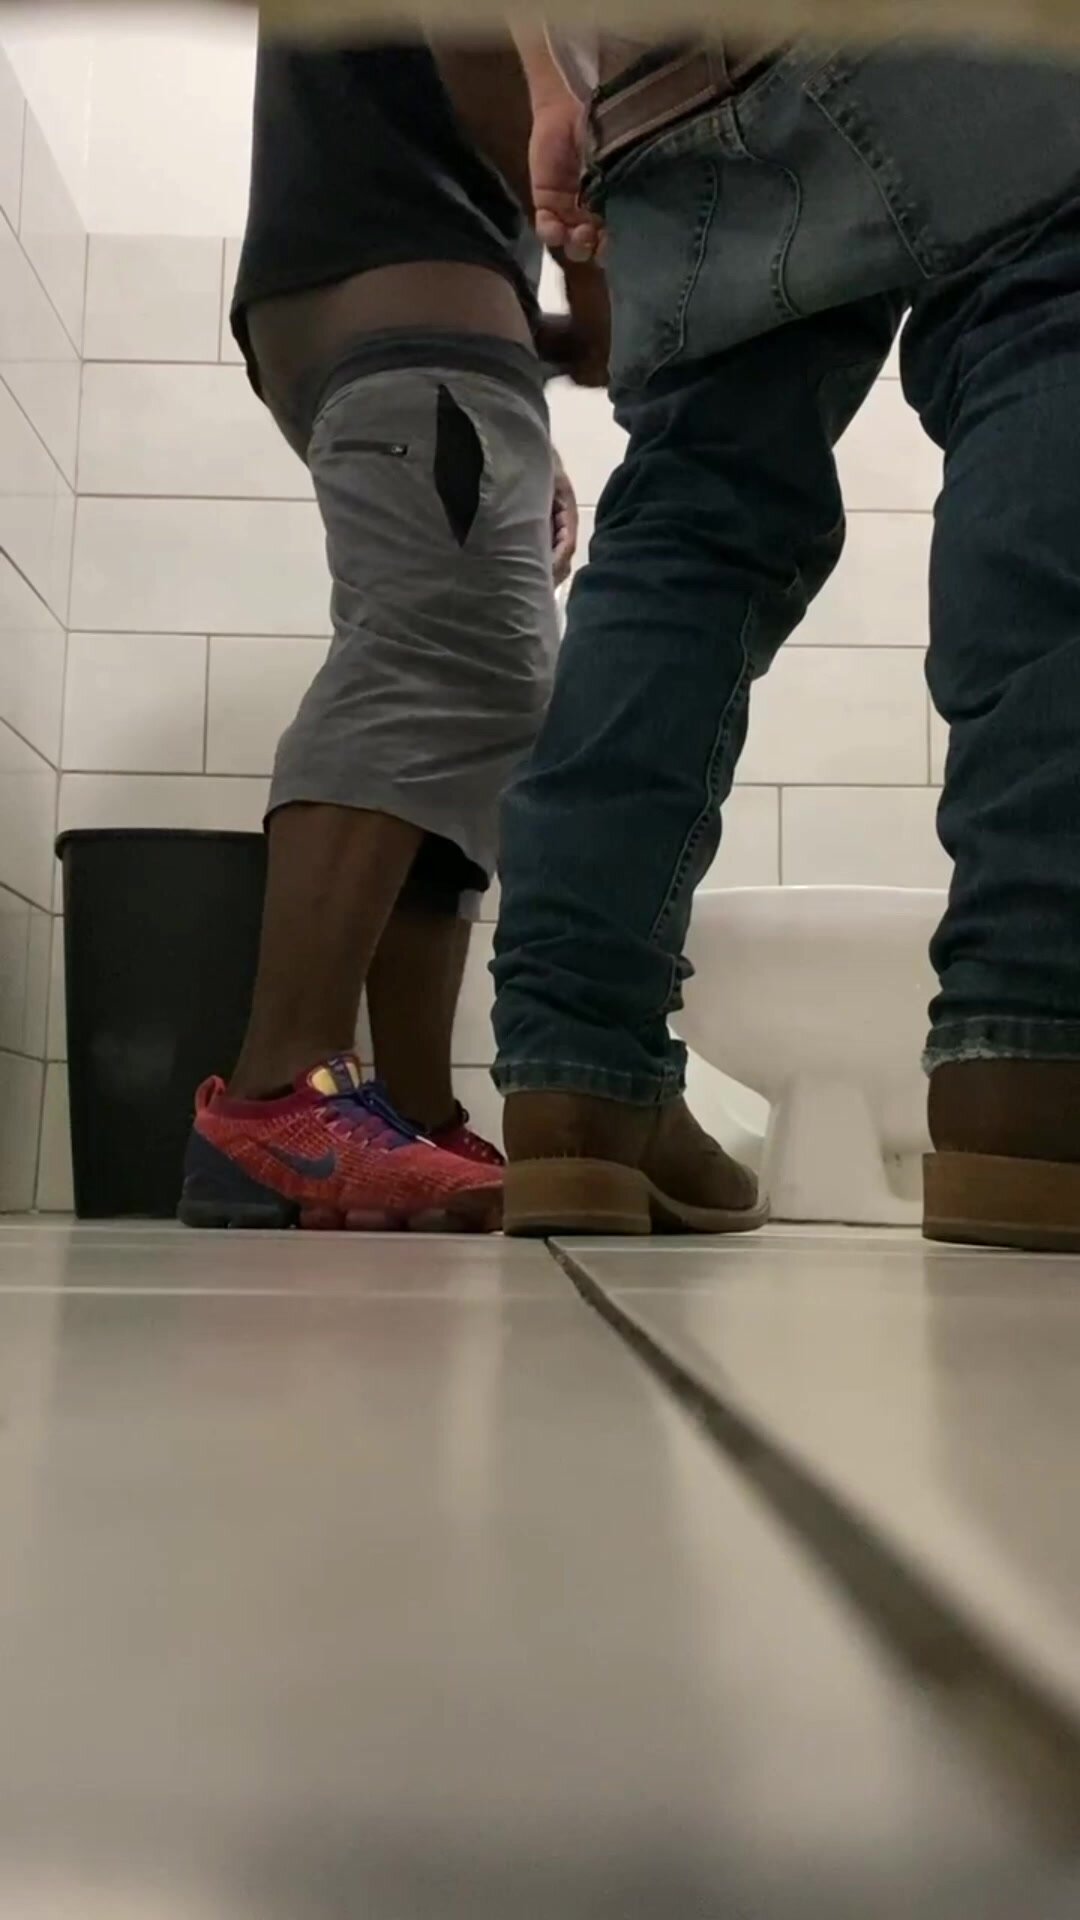 voyeur in mens restroom